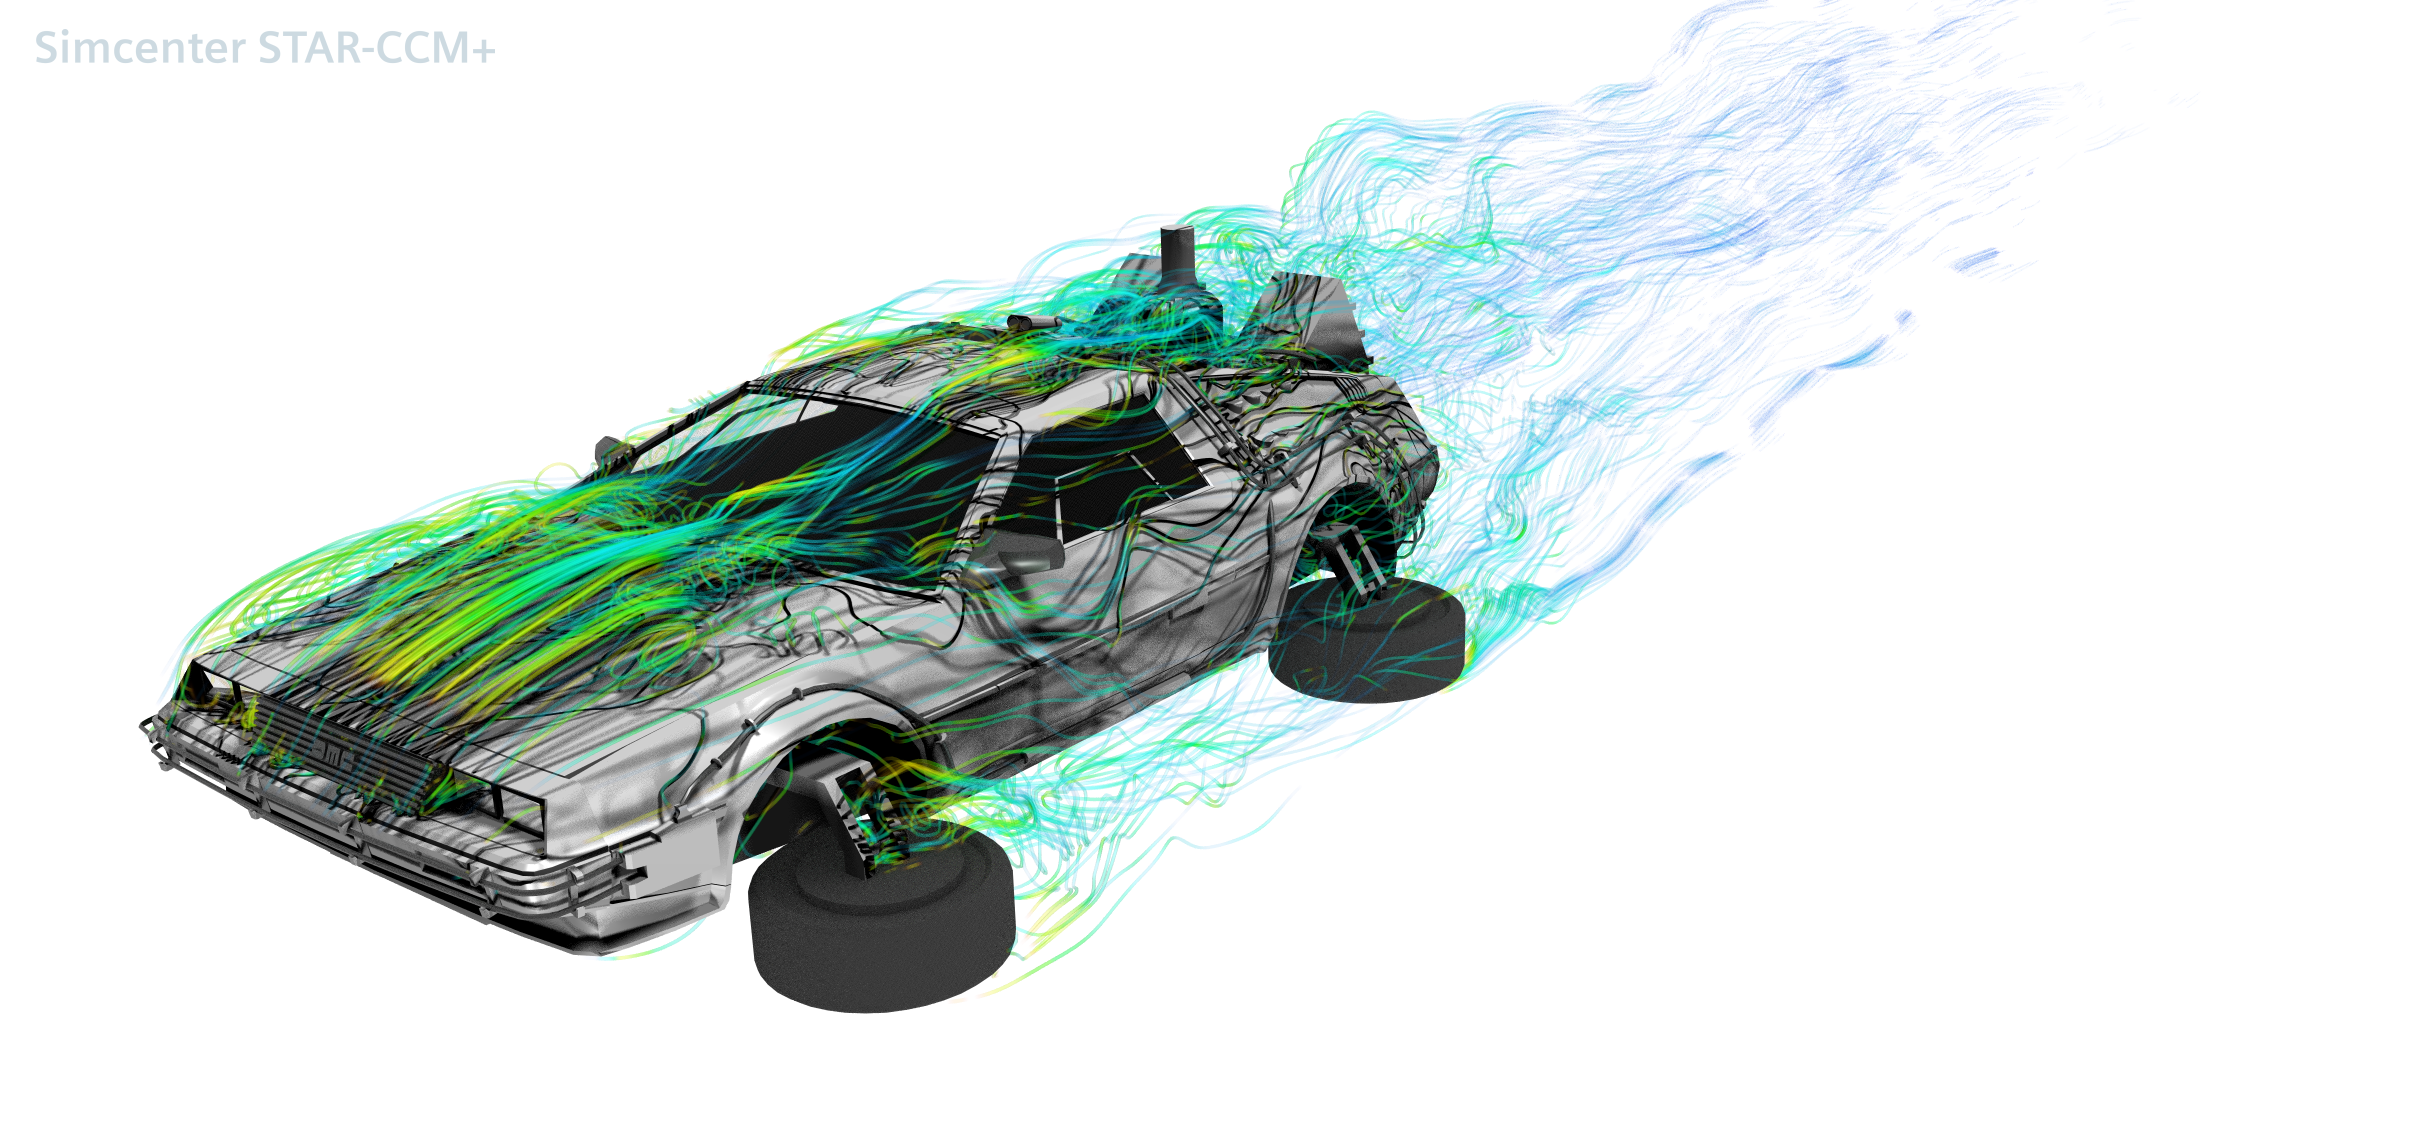 Delorean aerodynamics - A Back to the Future tribute